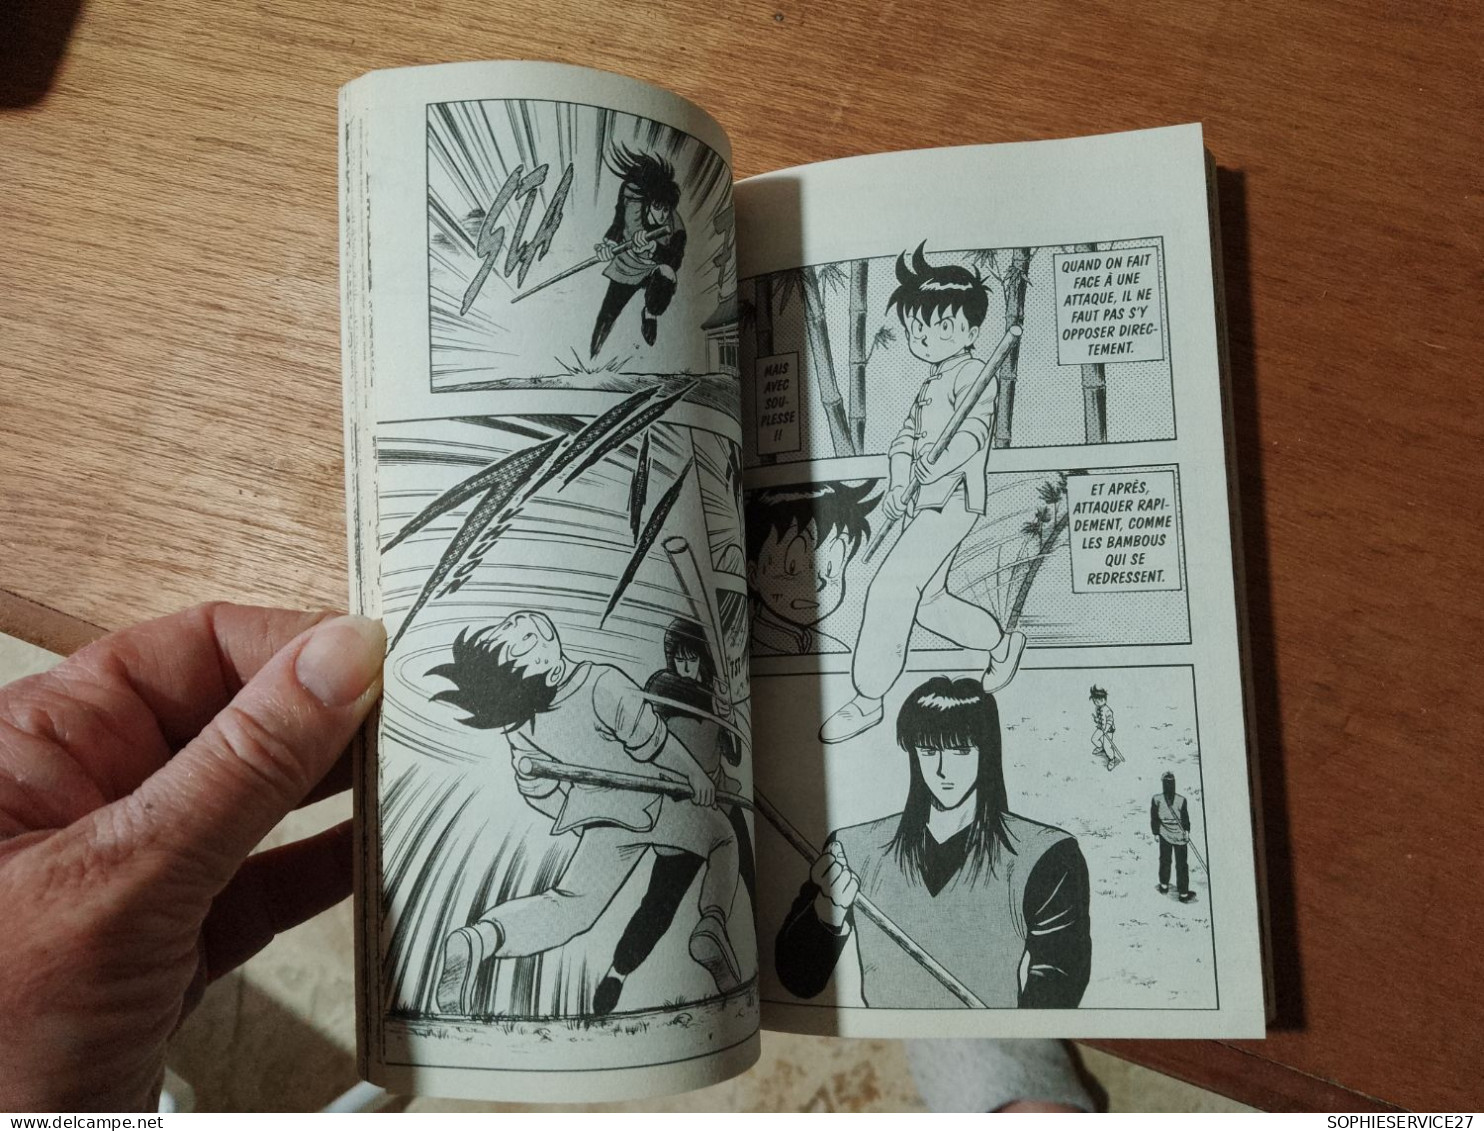 148 // TEKKEN CHINMI / RIKI, LE MAITRE AVEUGLE - Mangas Version Française